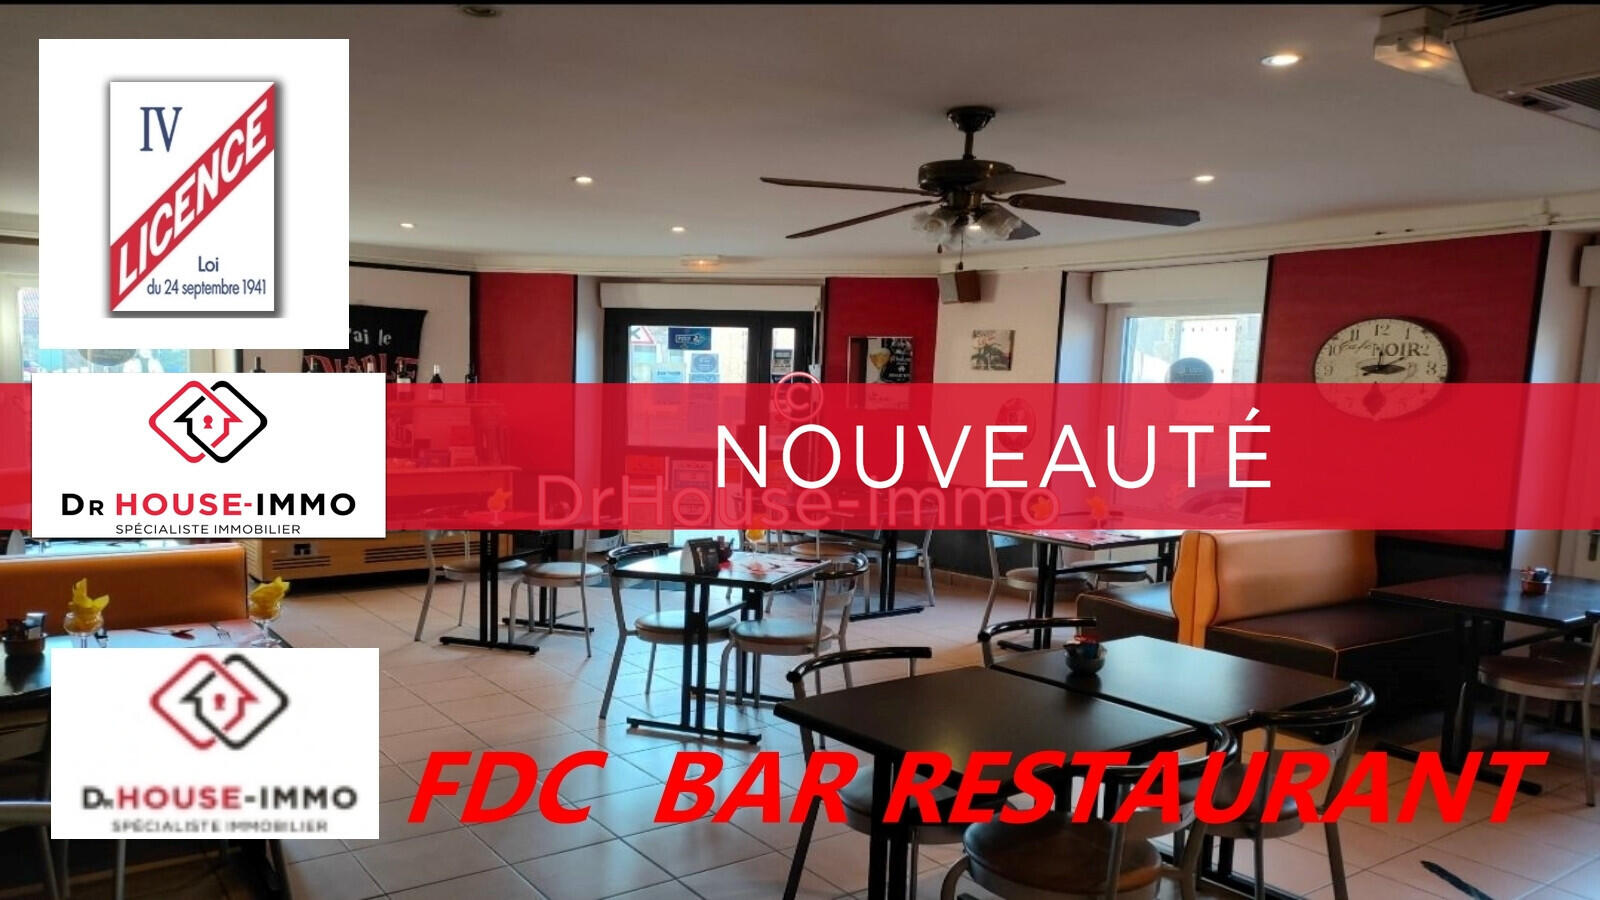 Vente FDC bar brasserie licence 4 vignoble Nantais